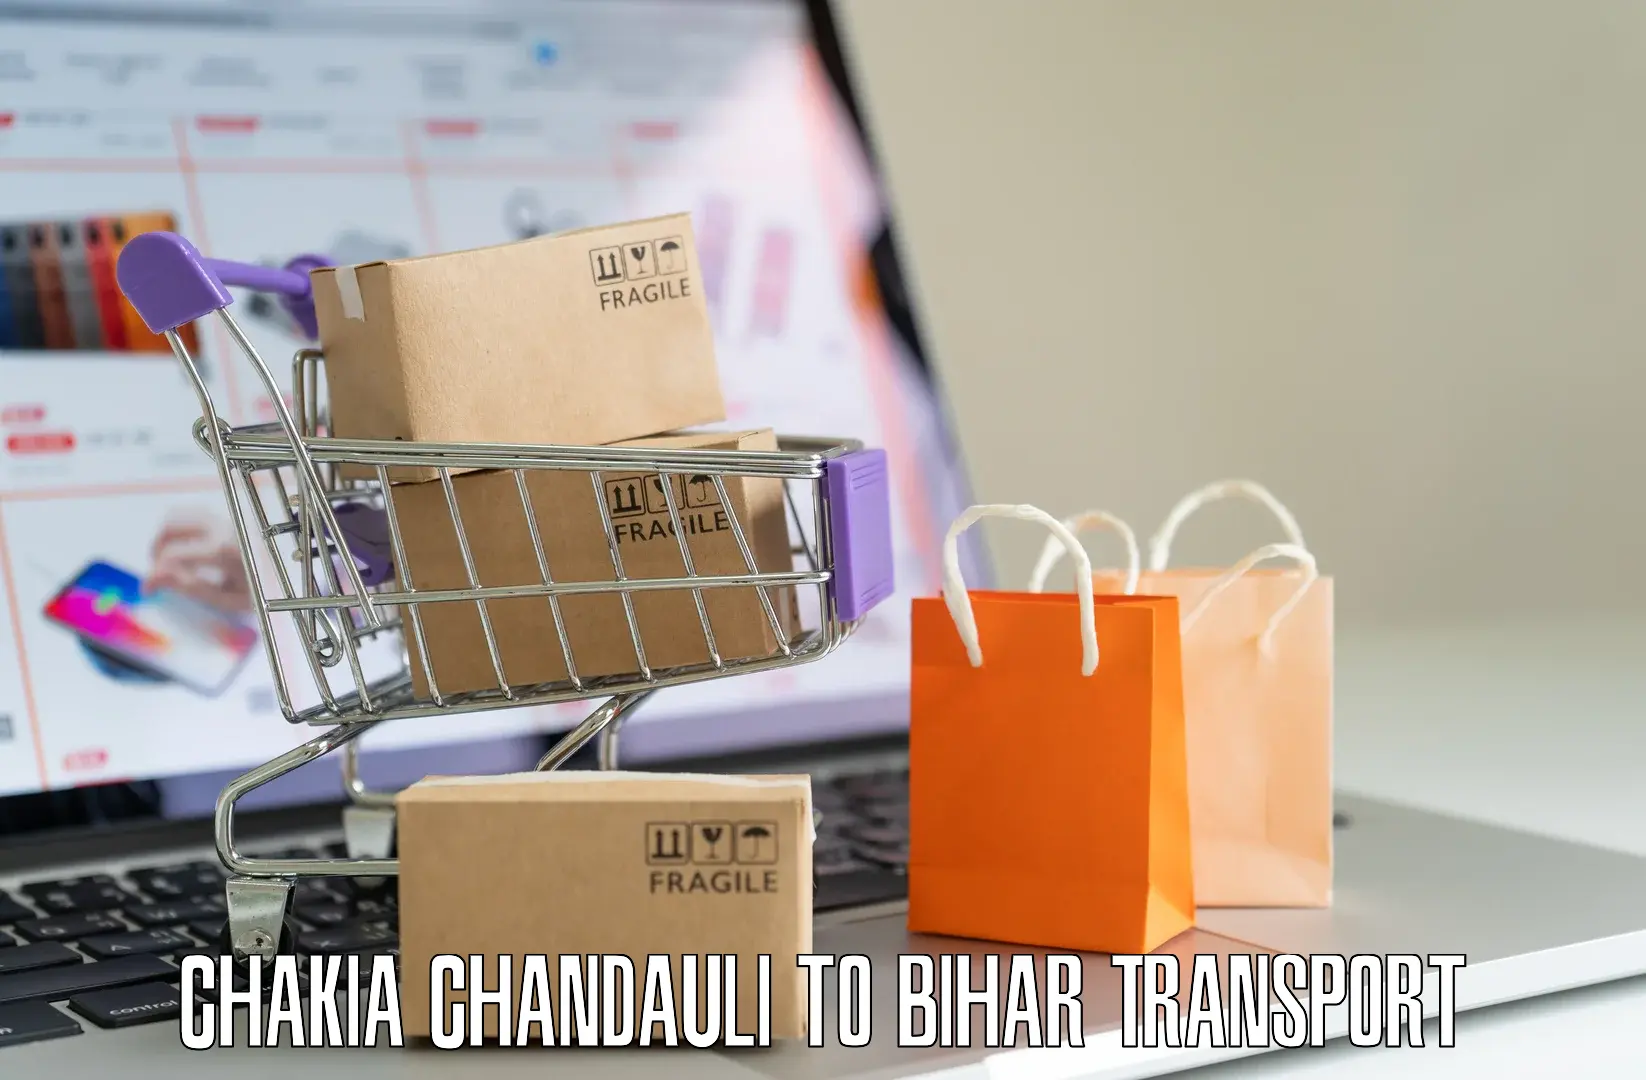 Pick up transport service Chakia Chandauli to Kochas